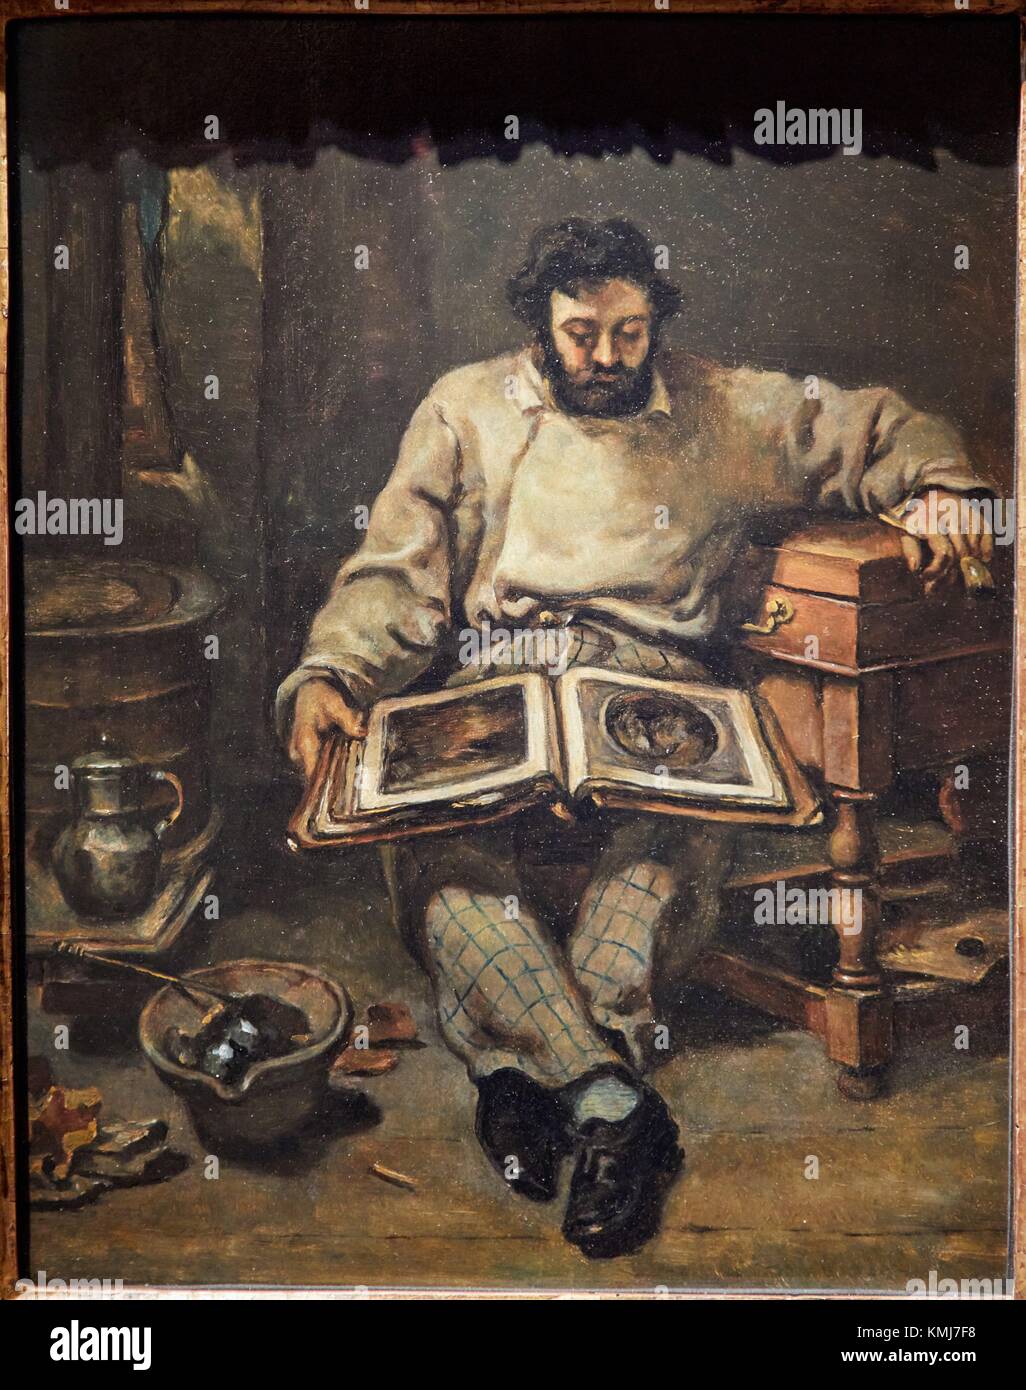 Marc Trapadoux Examinando un libro de impresiones, Gustave Courbet, 1849, Musée d'Art Moderne, Troyes, región de Champaña-Ardenas, Departamento de Aube, Francia Foto de stock